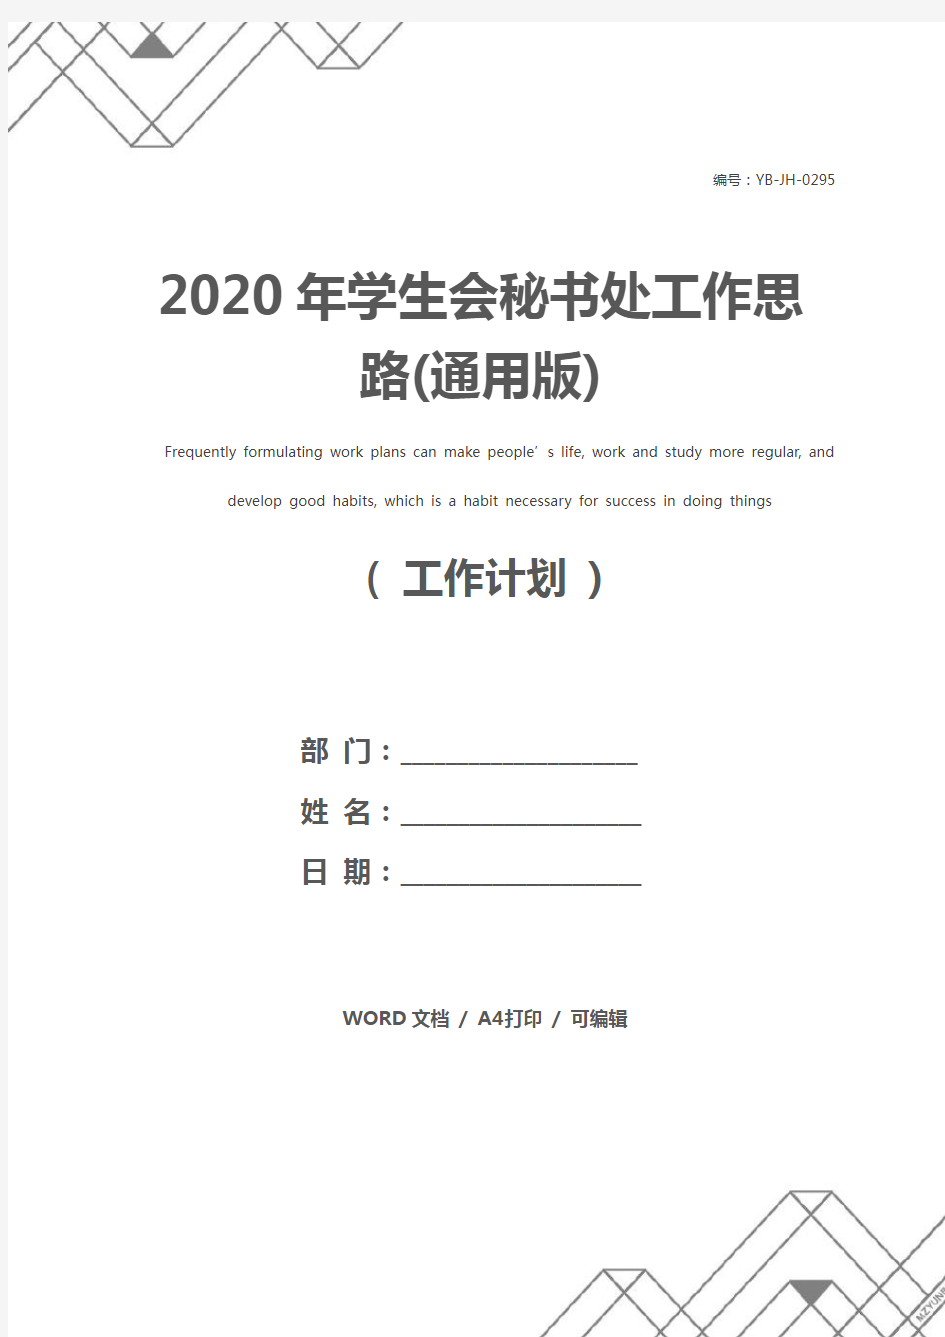 2020年学生会秘书处工作思路(通用版)